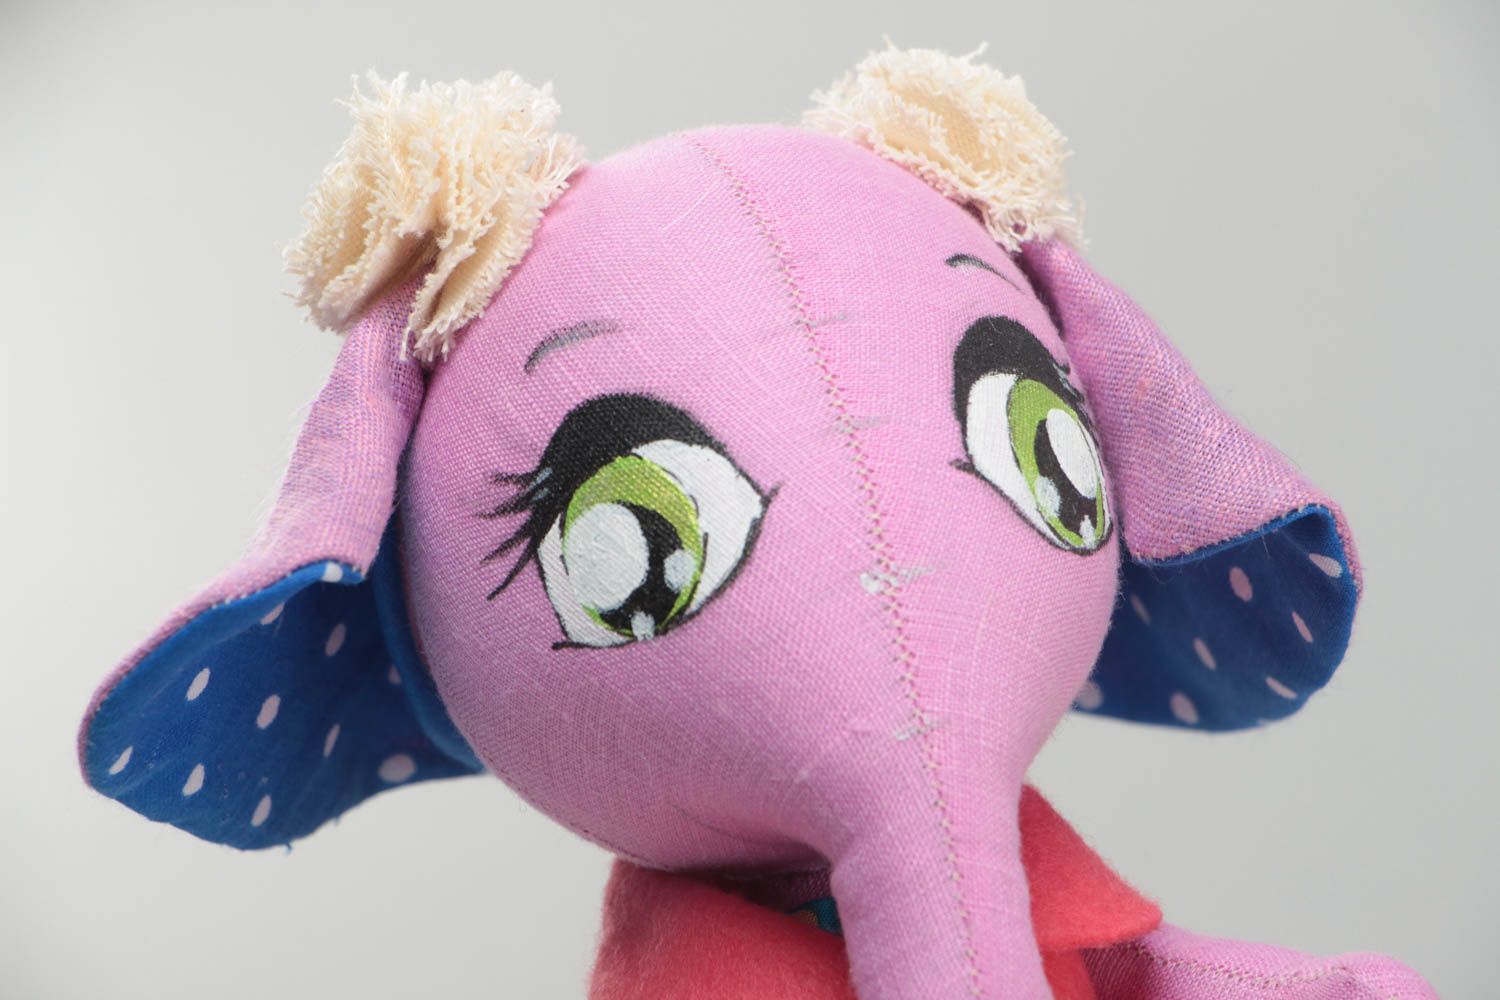 Тканевая игрушка в виде слонихи в платьице розовая красивая смешная хэнд мейд фото 3